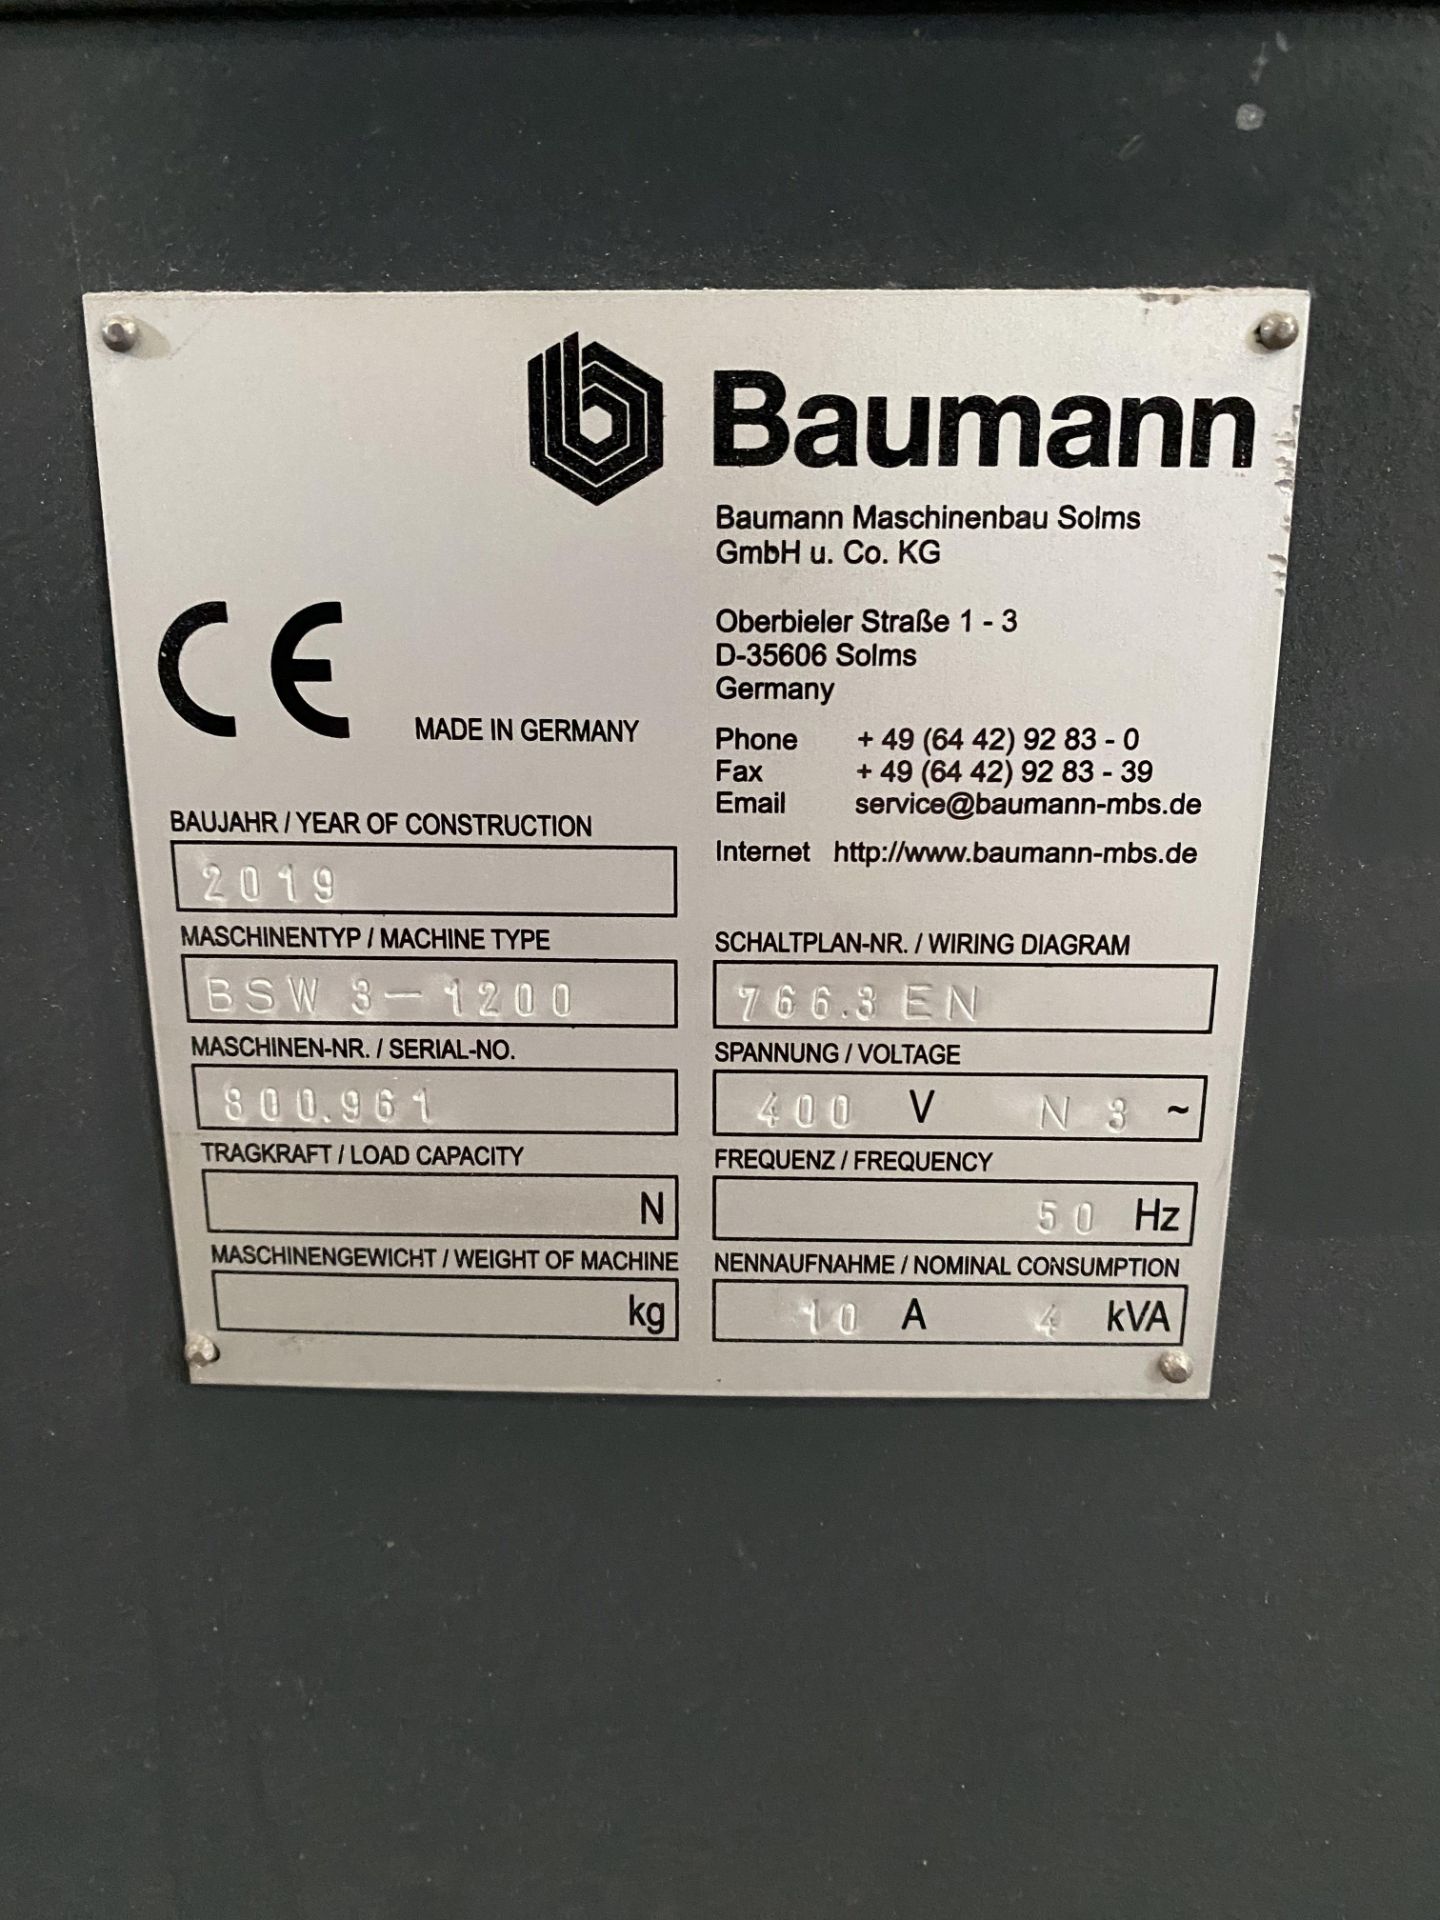 Baumann pile turner, model BSW-3-1200, serial no. 800i961 (2019) - Bild 3 aus 8